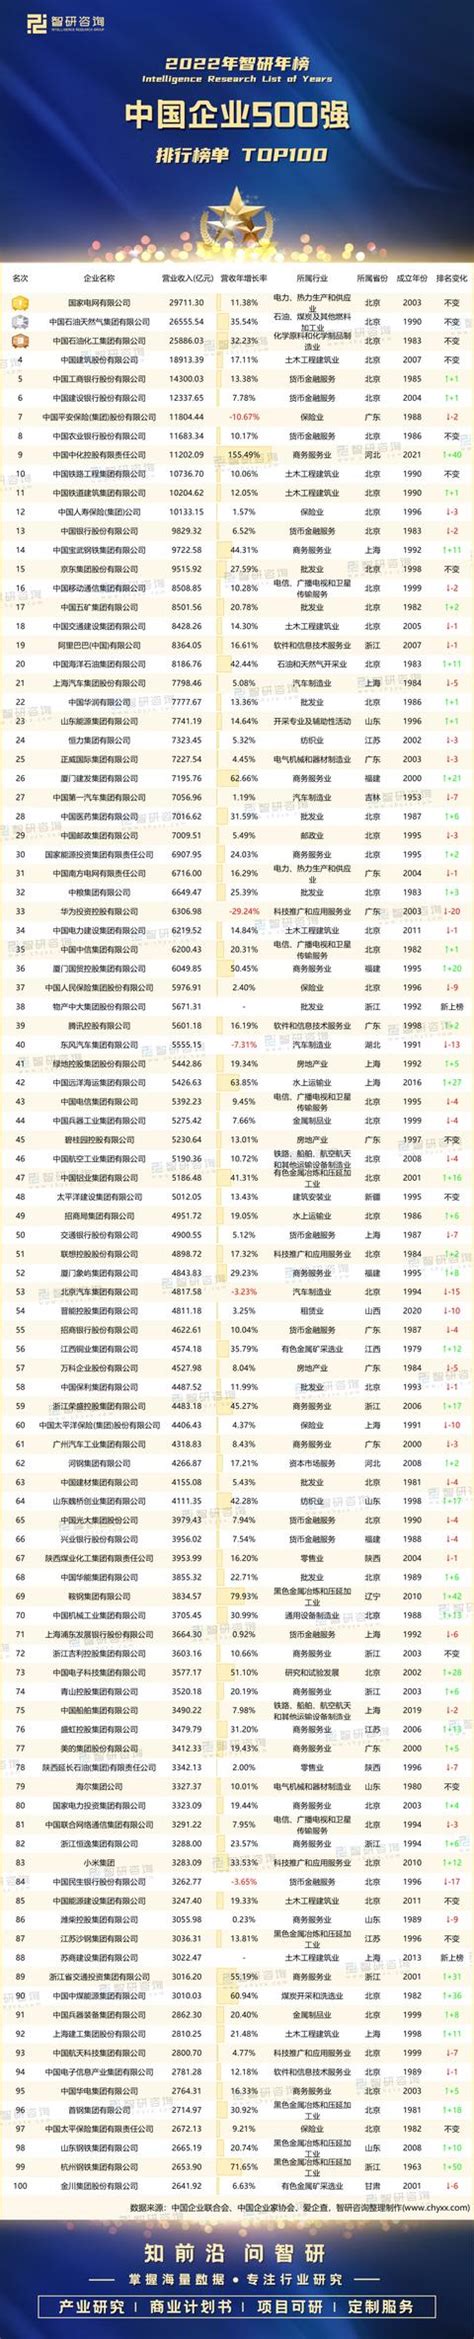 2018年中国十大宝宝起名大师排行榜